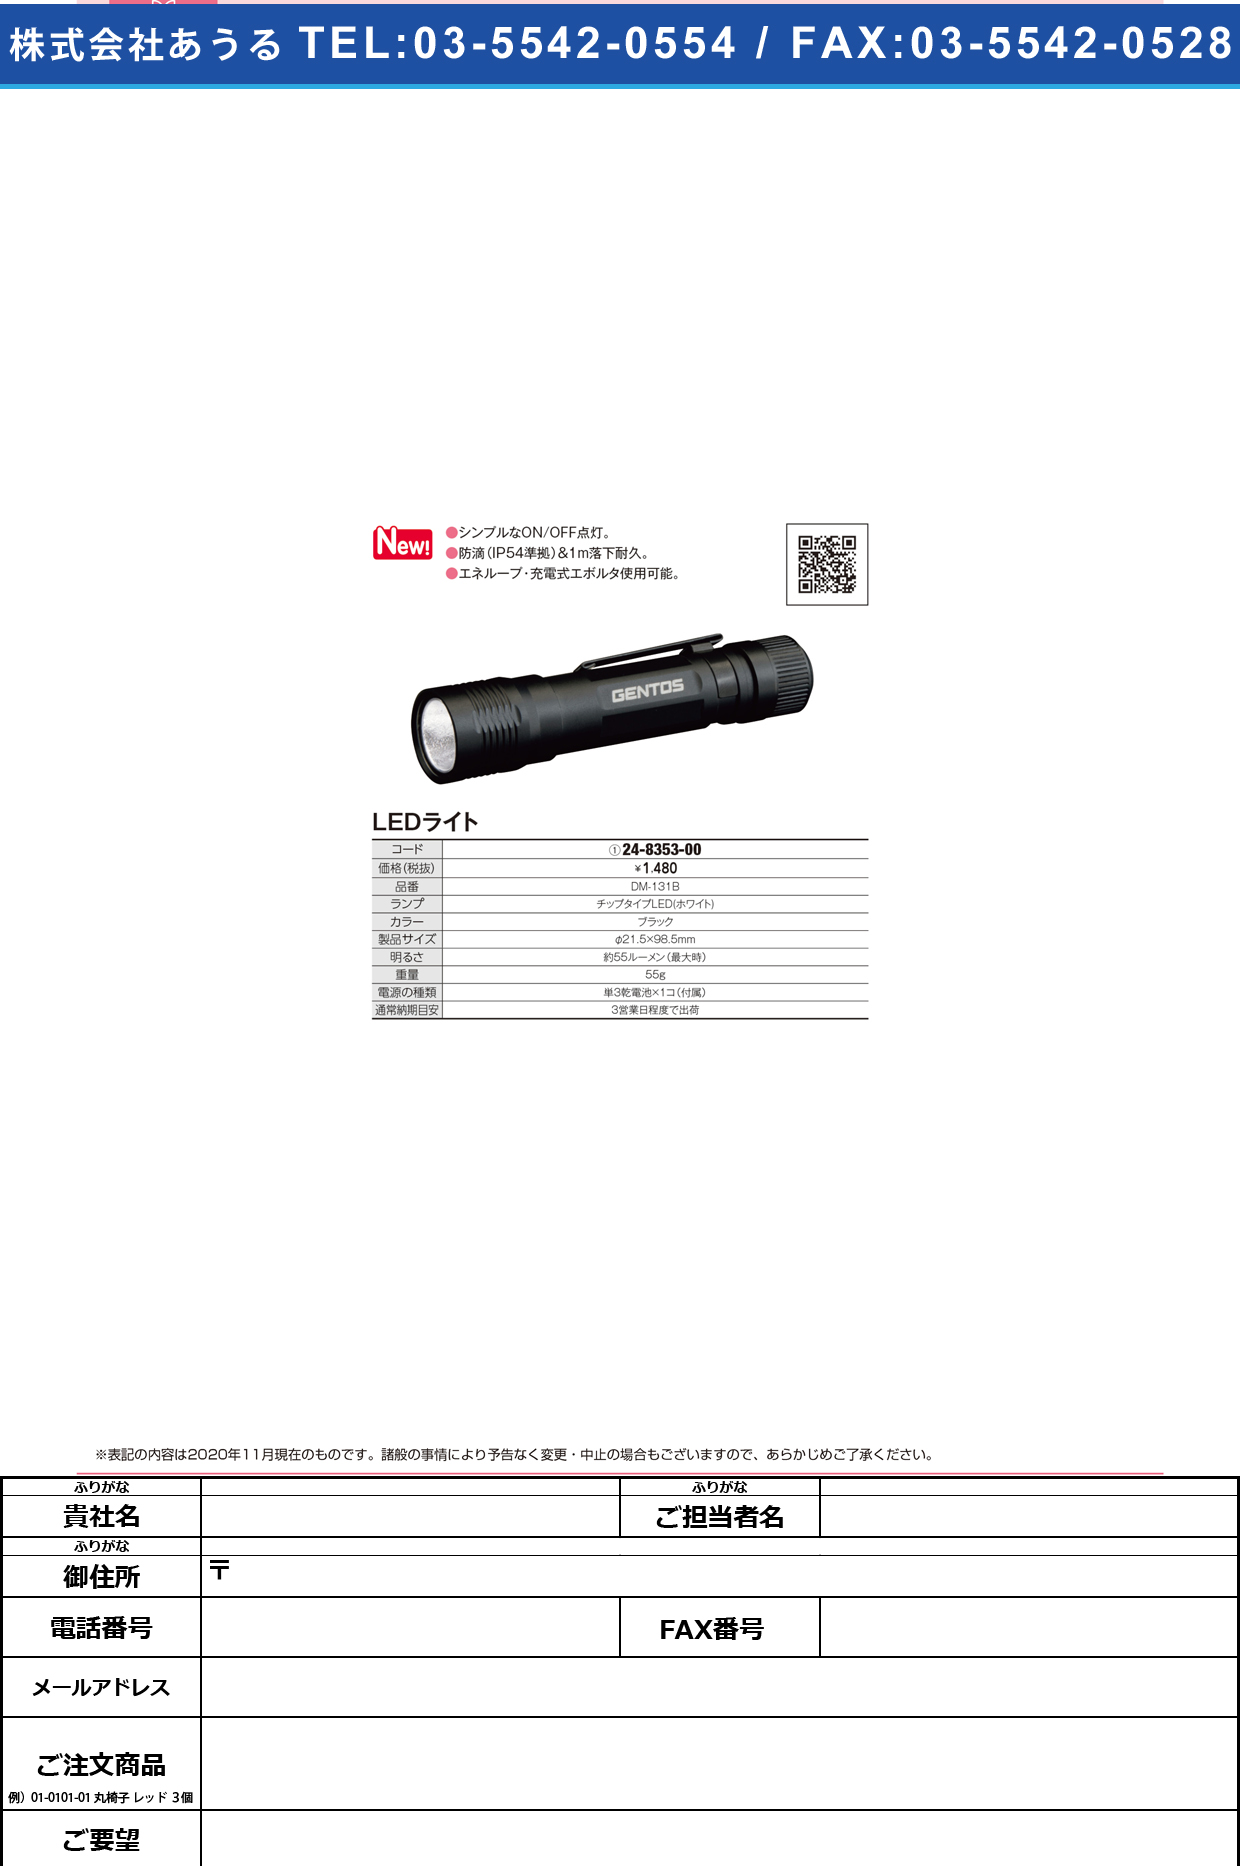 LEDヘッドライト DM-131B(ブラック)DM-131B(ﾌﾞﾗｯｸ)(24-8353-00)【ジェントス?】(販売単位:1)